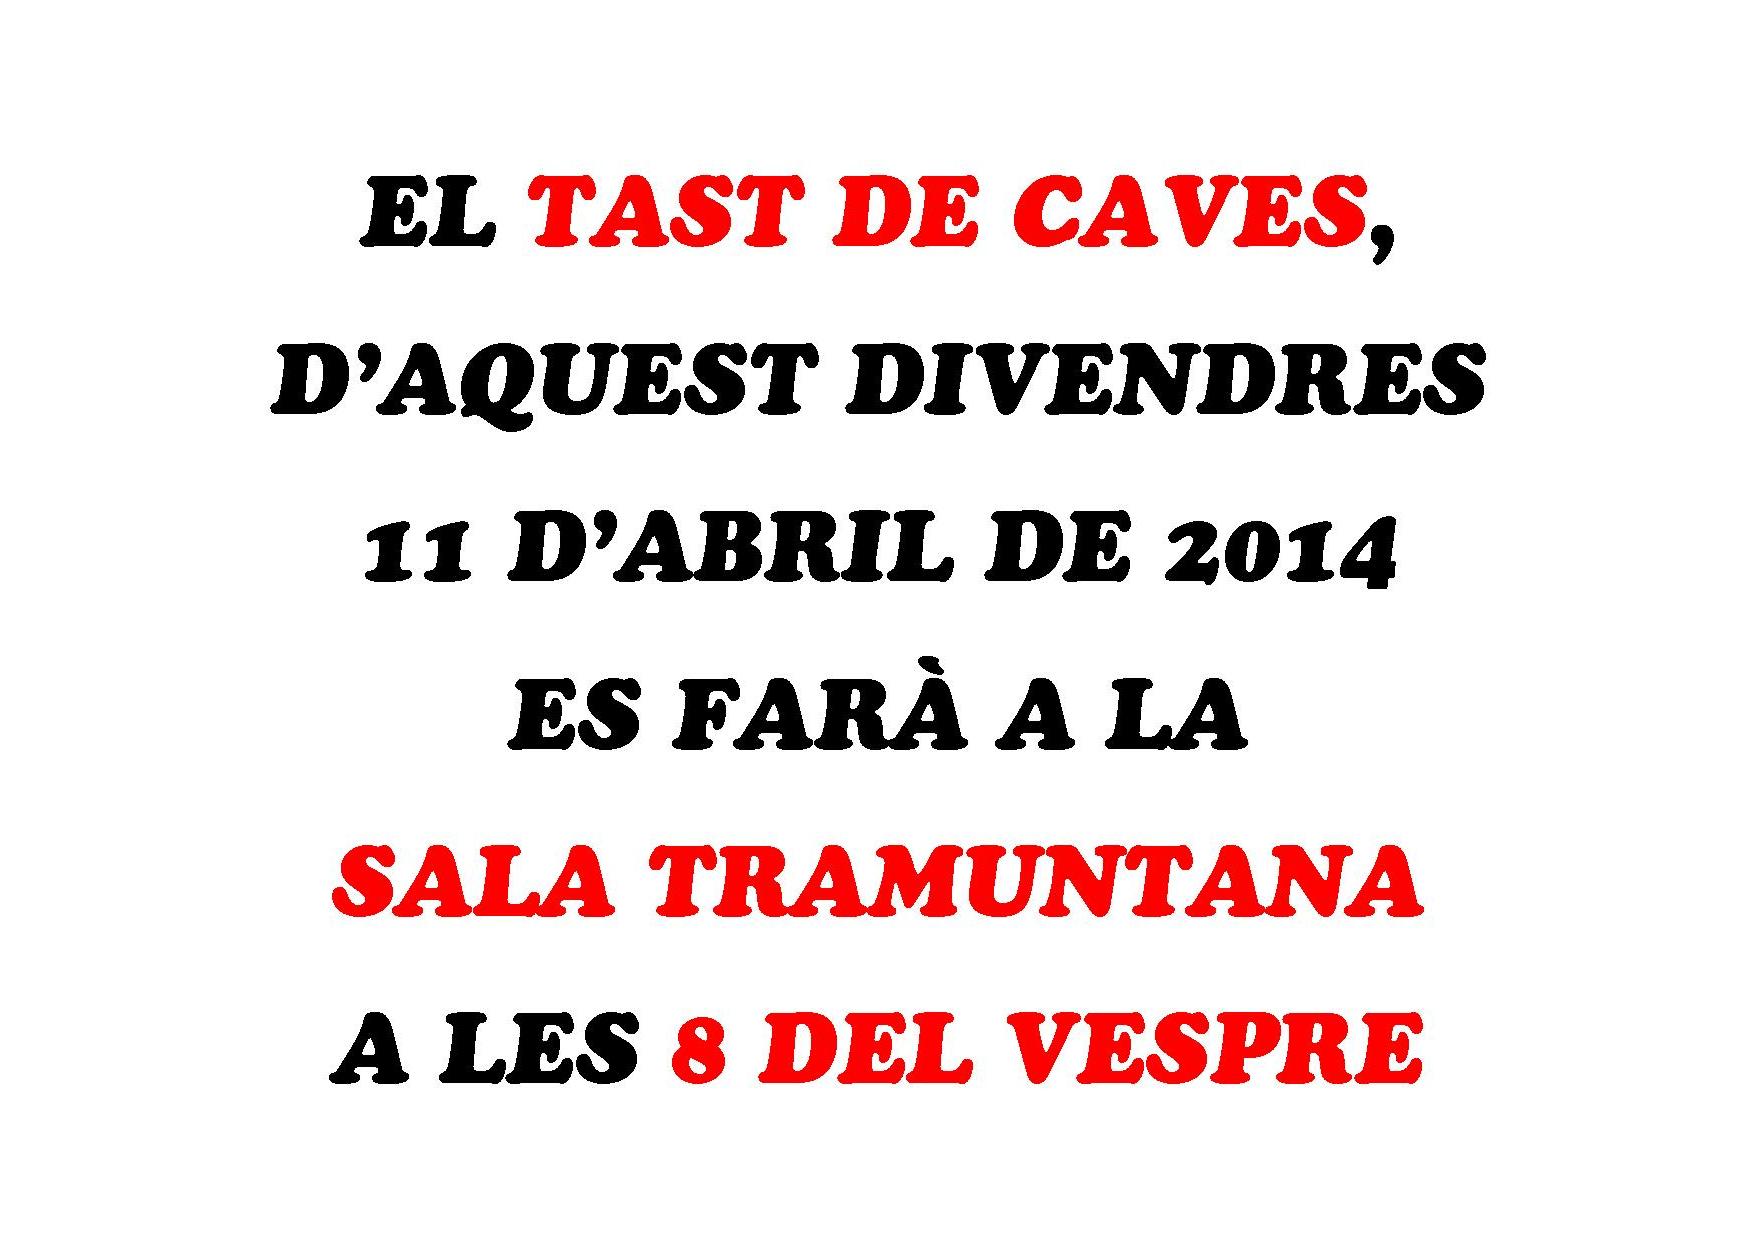 El tast de caves d'aquest divendres 11 d'abril es farà a la Sala Tramuntana a les 8 del vespre.